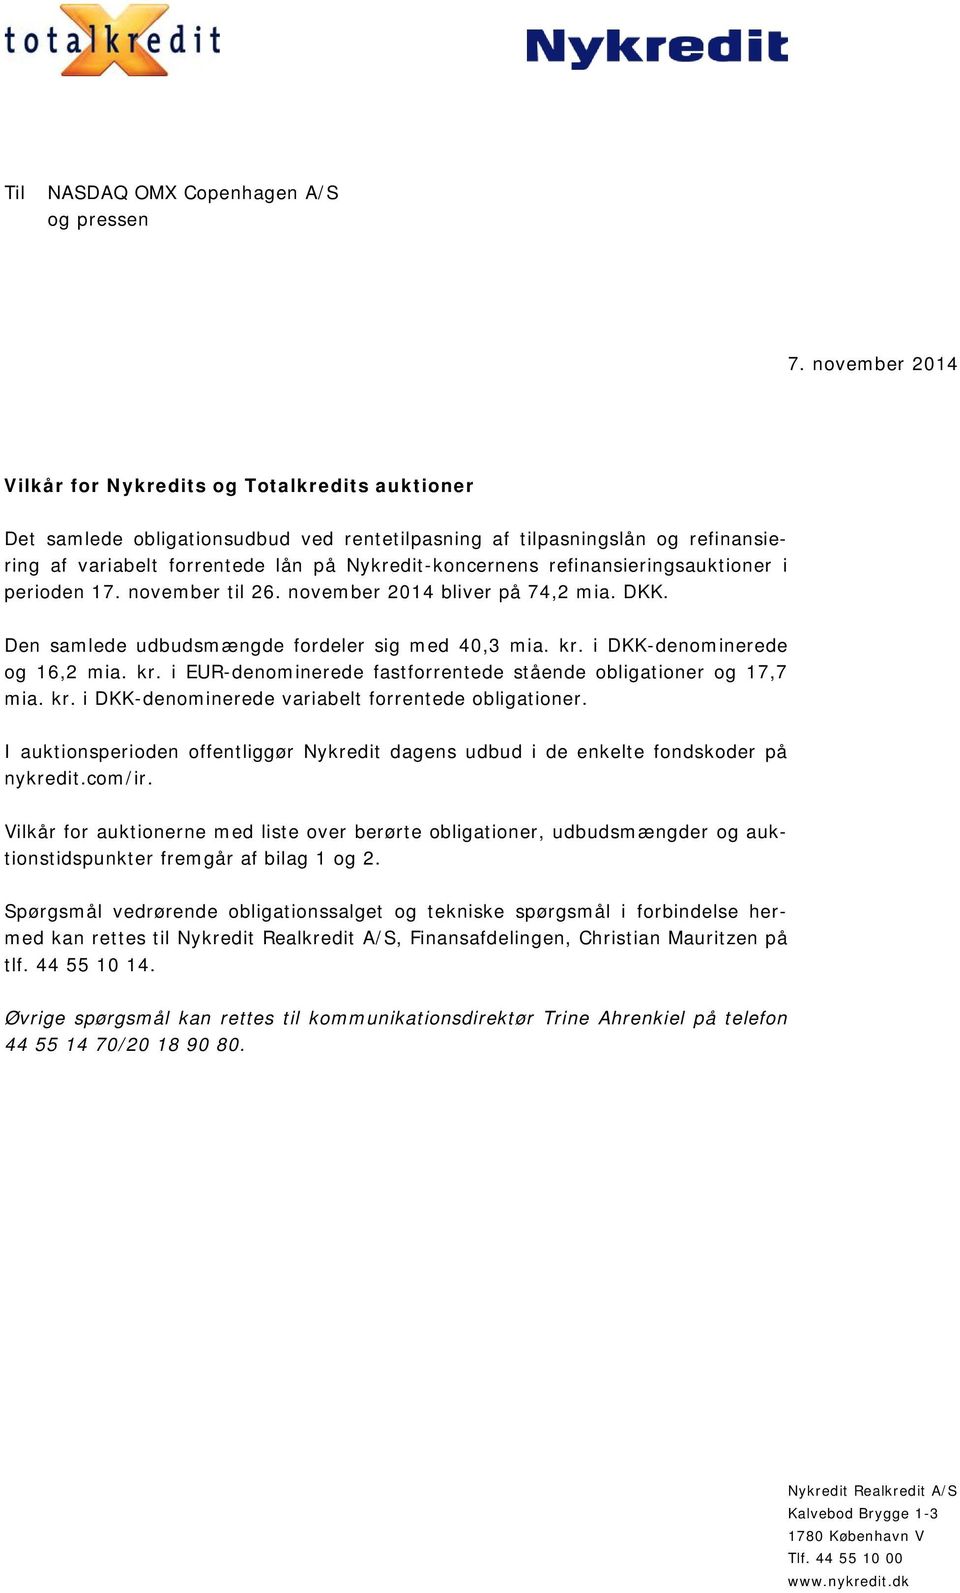 refinansieringsauktioner i perioden 17. november til 26. november 2014 bliver på 74,2 mia. DKK. Den samlede udbudsmængde fordeler sig med 40,3 mia. kr.